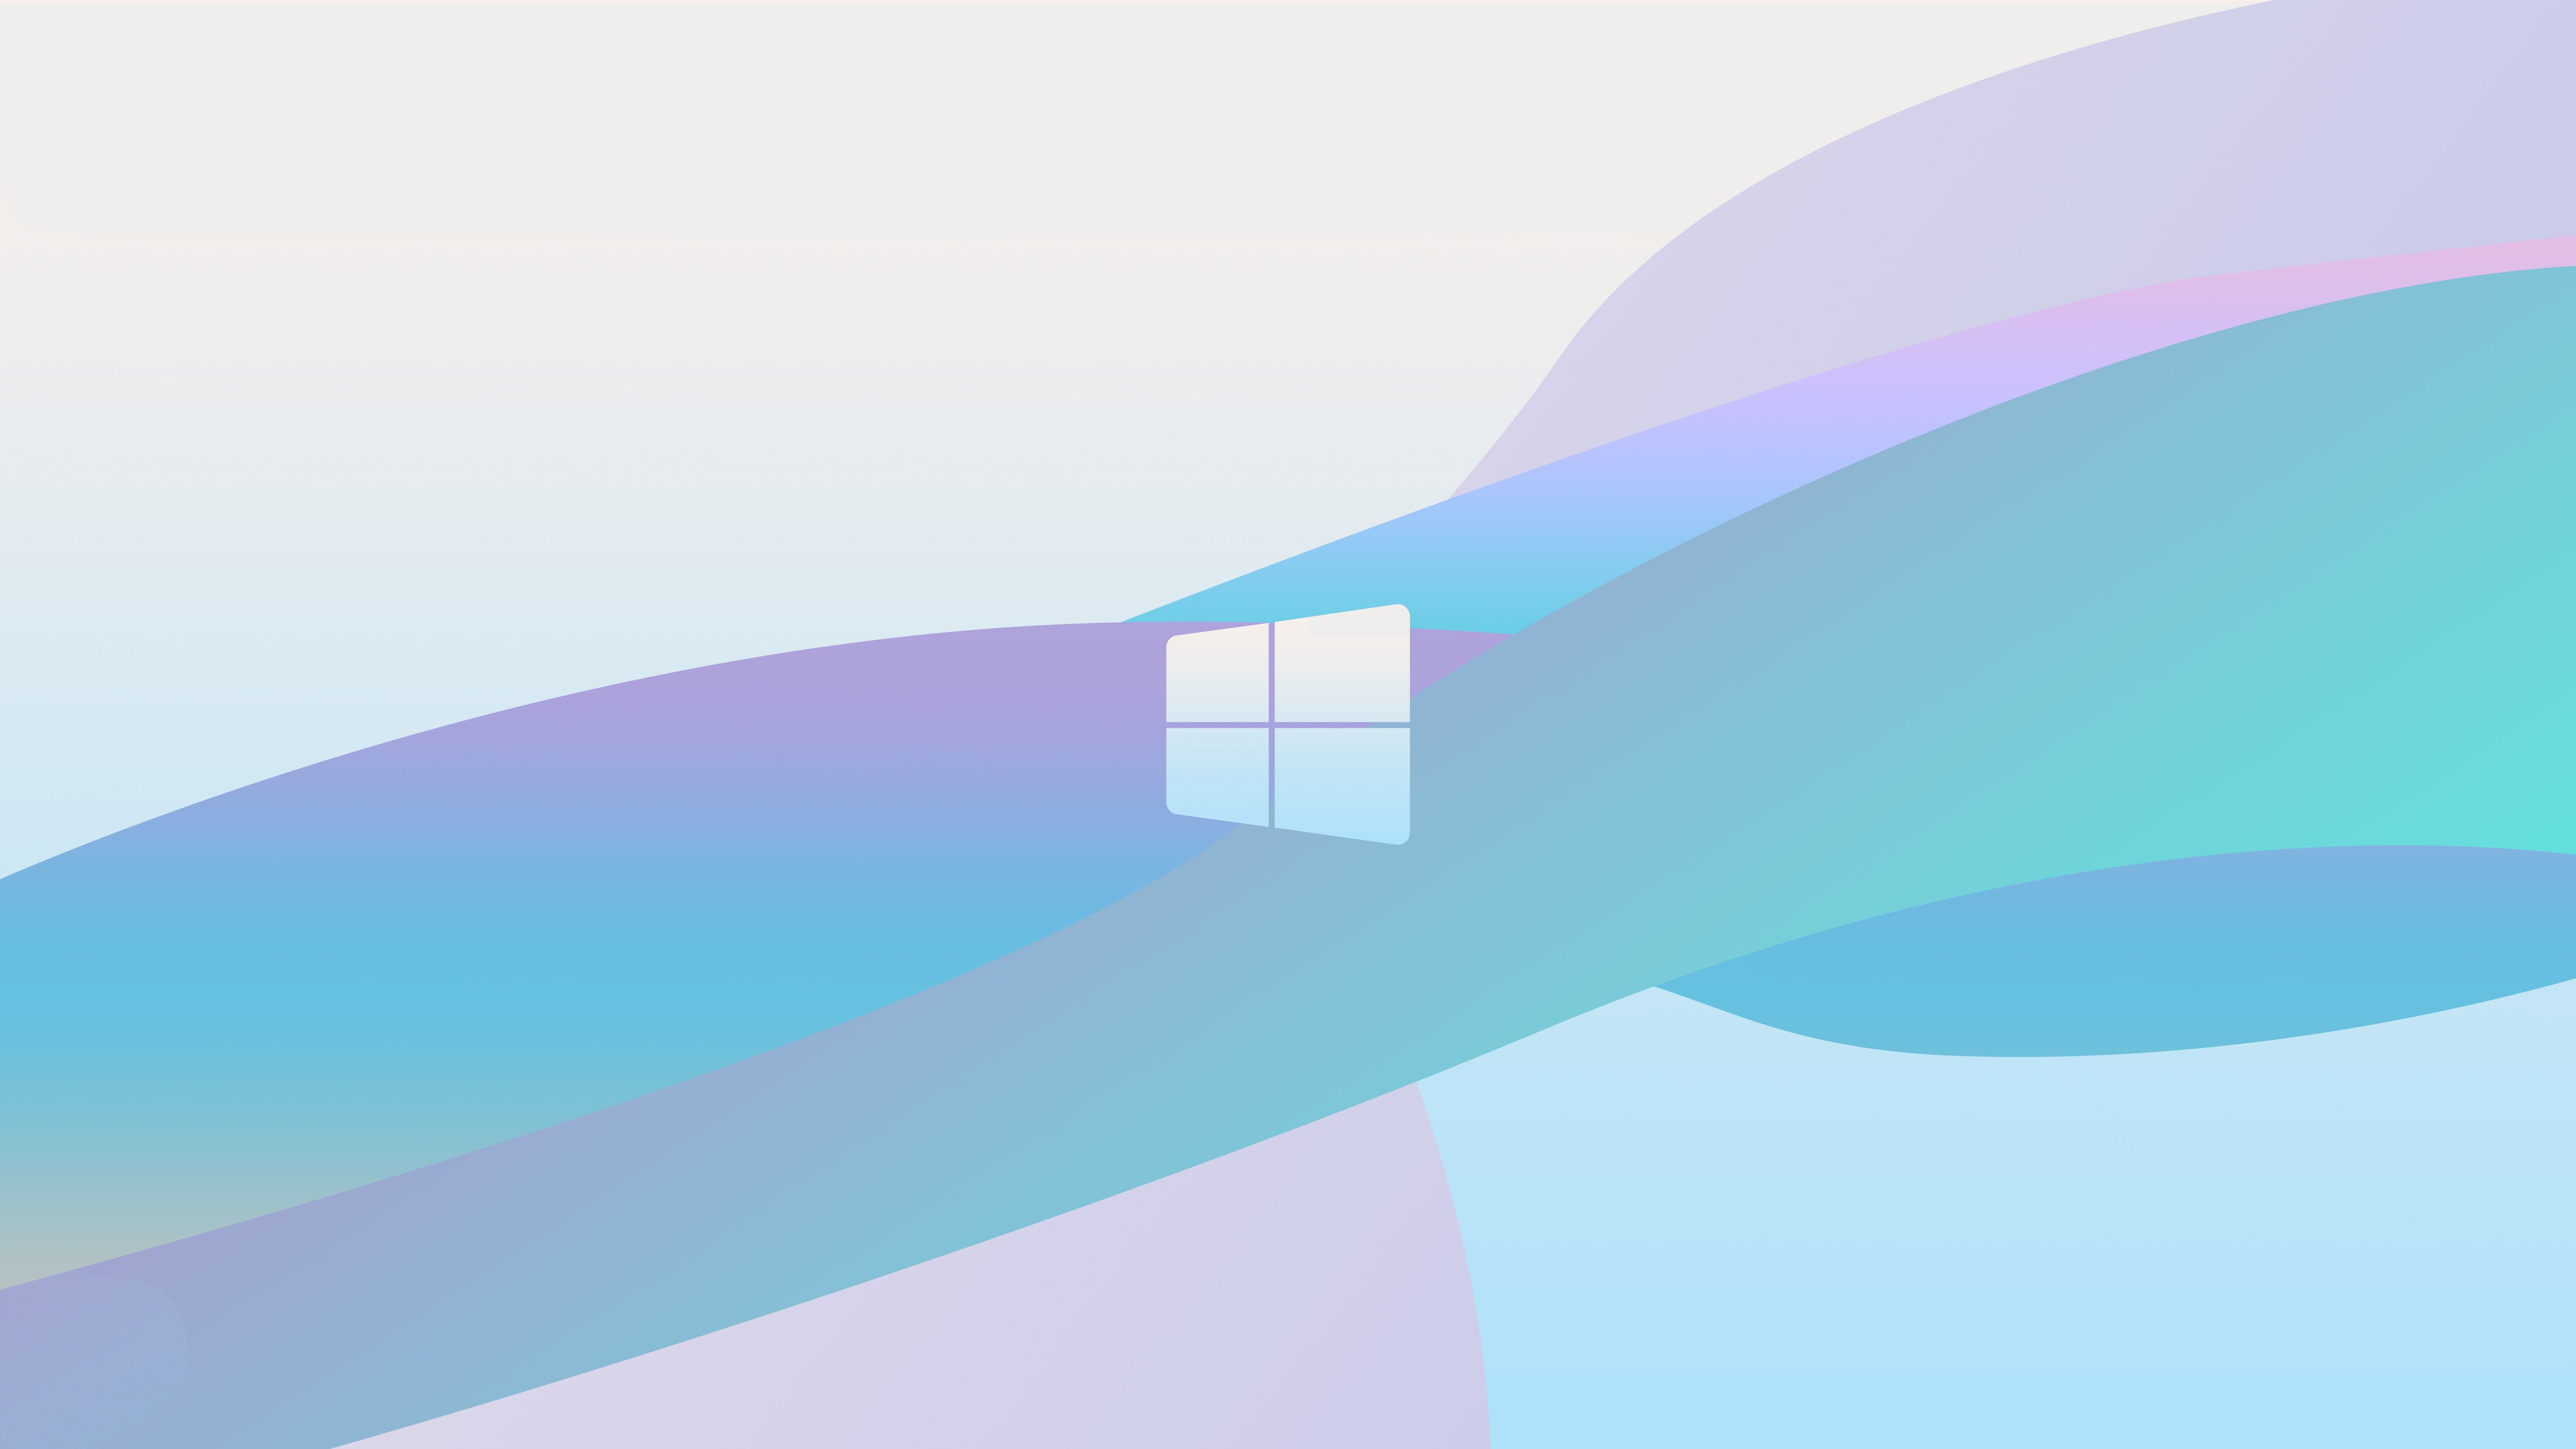 Windows 8K wallpapers là gì? Đó chính là những hình nền với độ phân giải siêu cao, đồng thời cung cấp cho người dùng những trải nghiệm thị giác tuyệt vời. Bài viết này sẽ chia sẻ đến bạn những hình nền 8K đẹp nhất dành cho máy tính Windows. Hãy tham khảo ngay nhé!